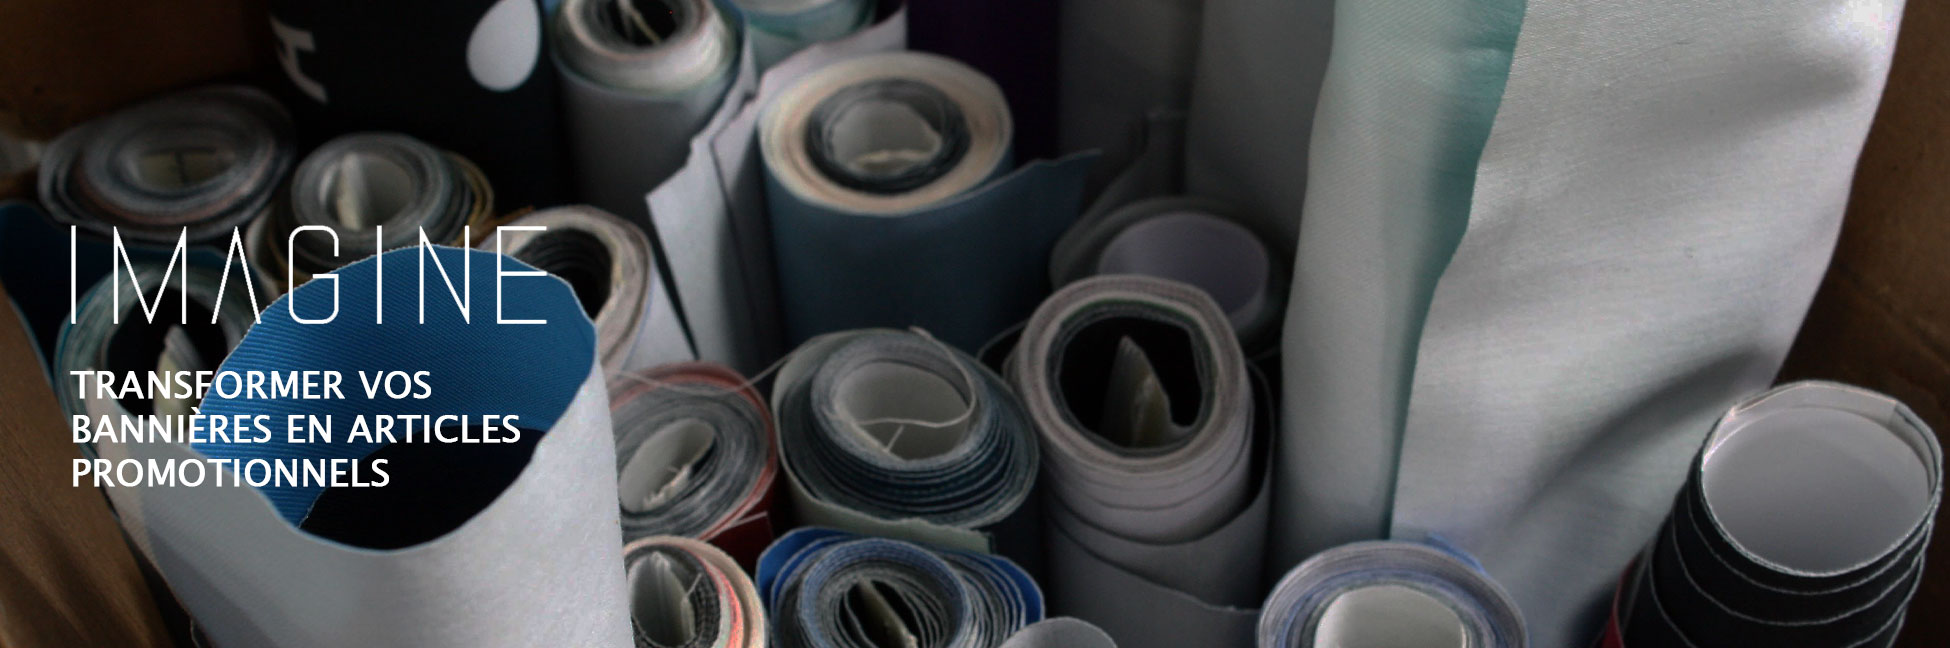 gestion des déchets textiles